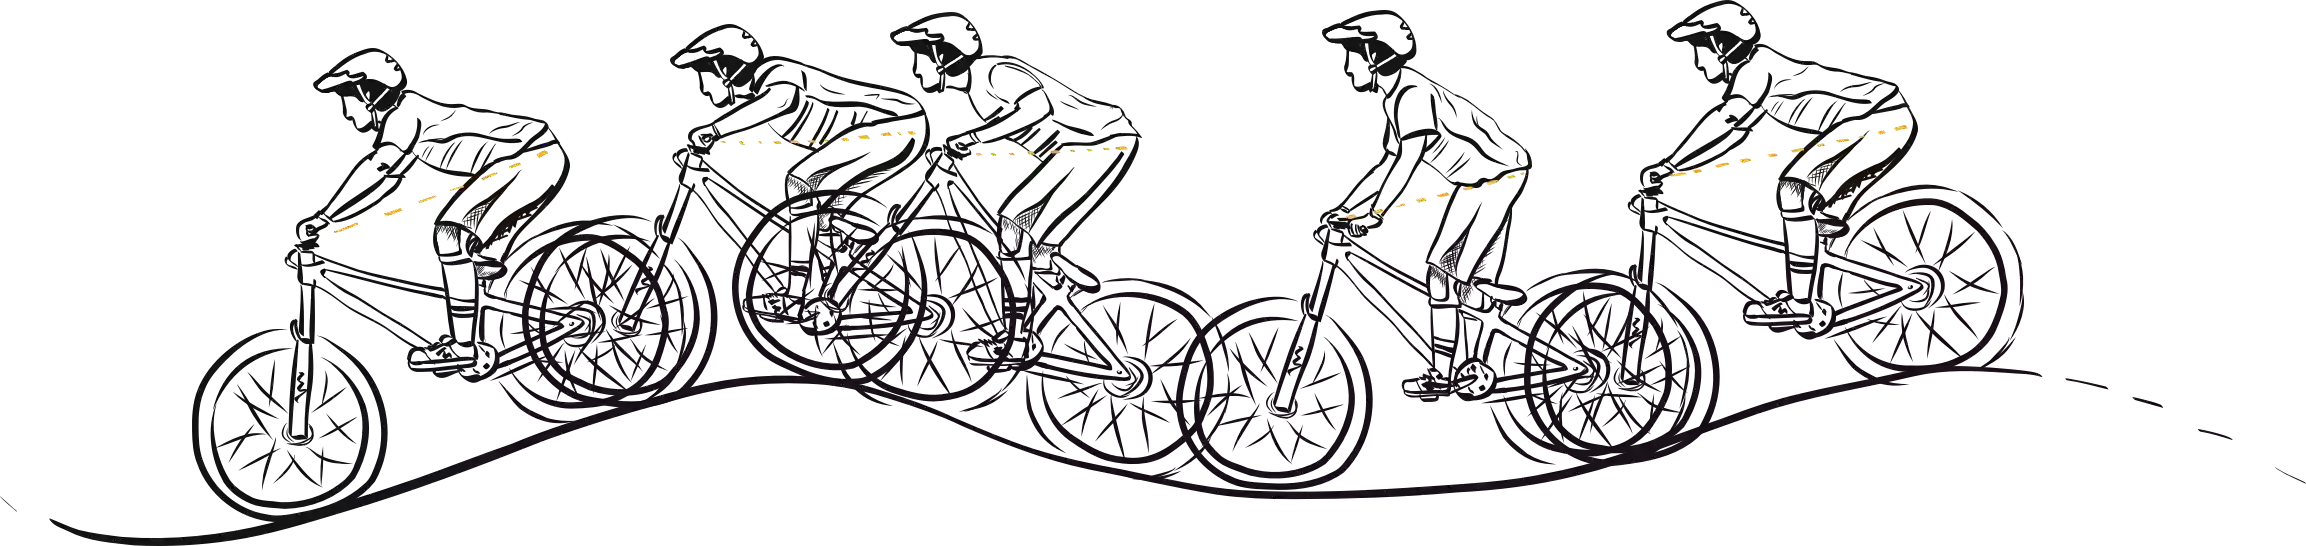 Kolesarji prikazani v različnih pozicijah na kolesu